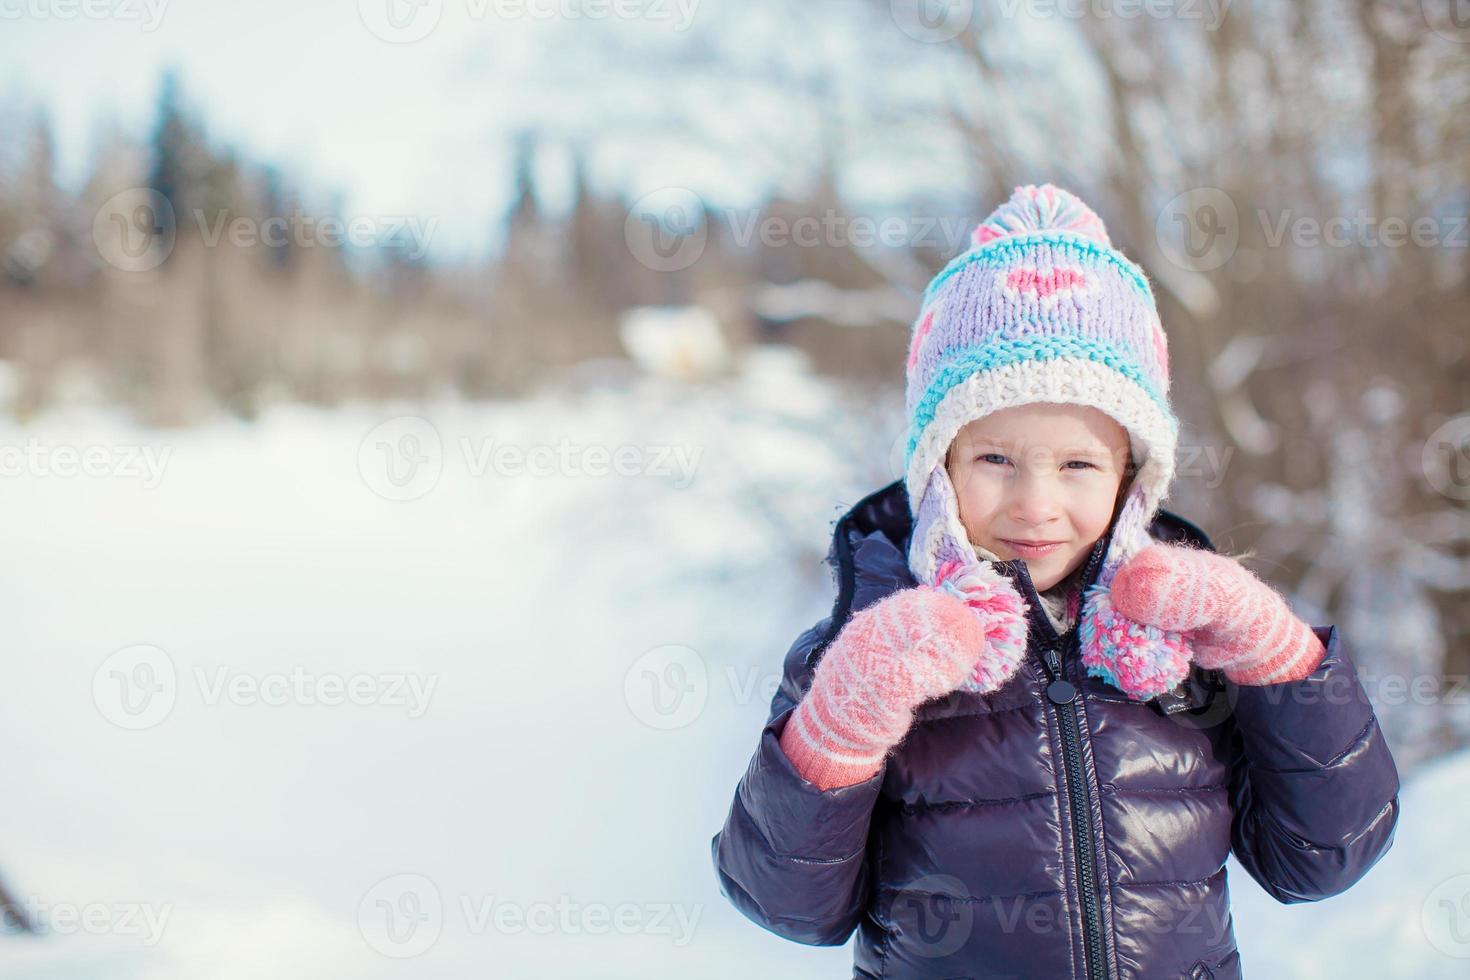 retrato de una niña adorable en un día soleado de invierno nevado foto